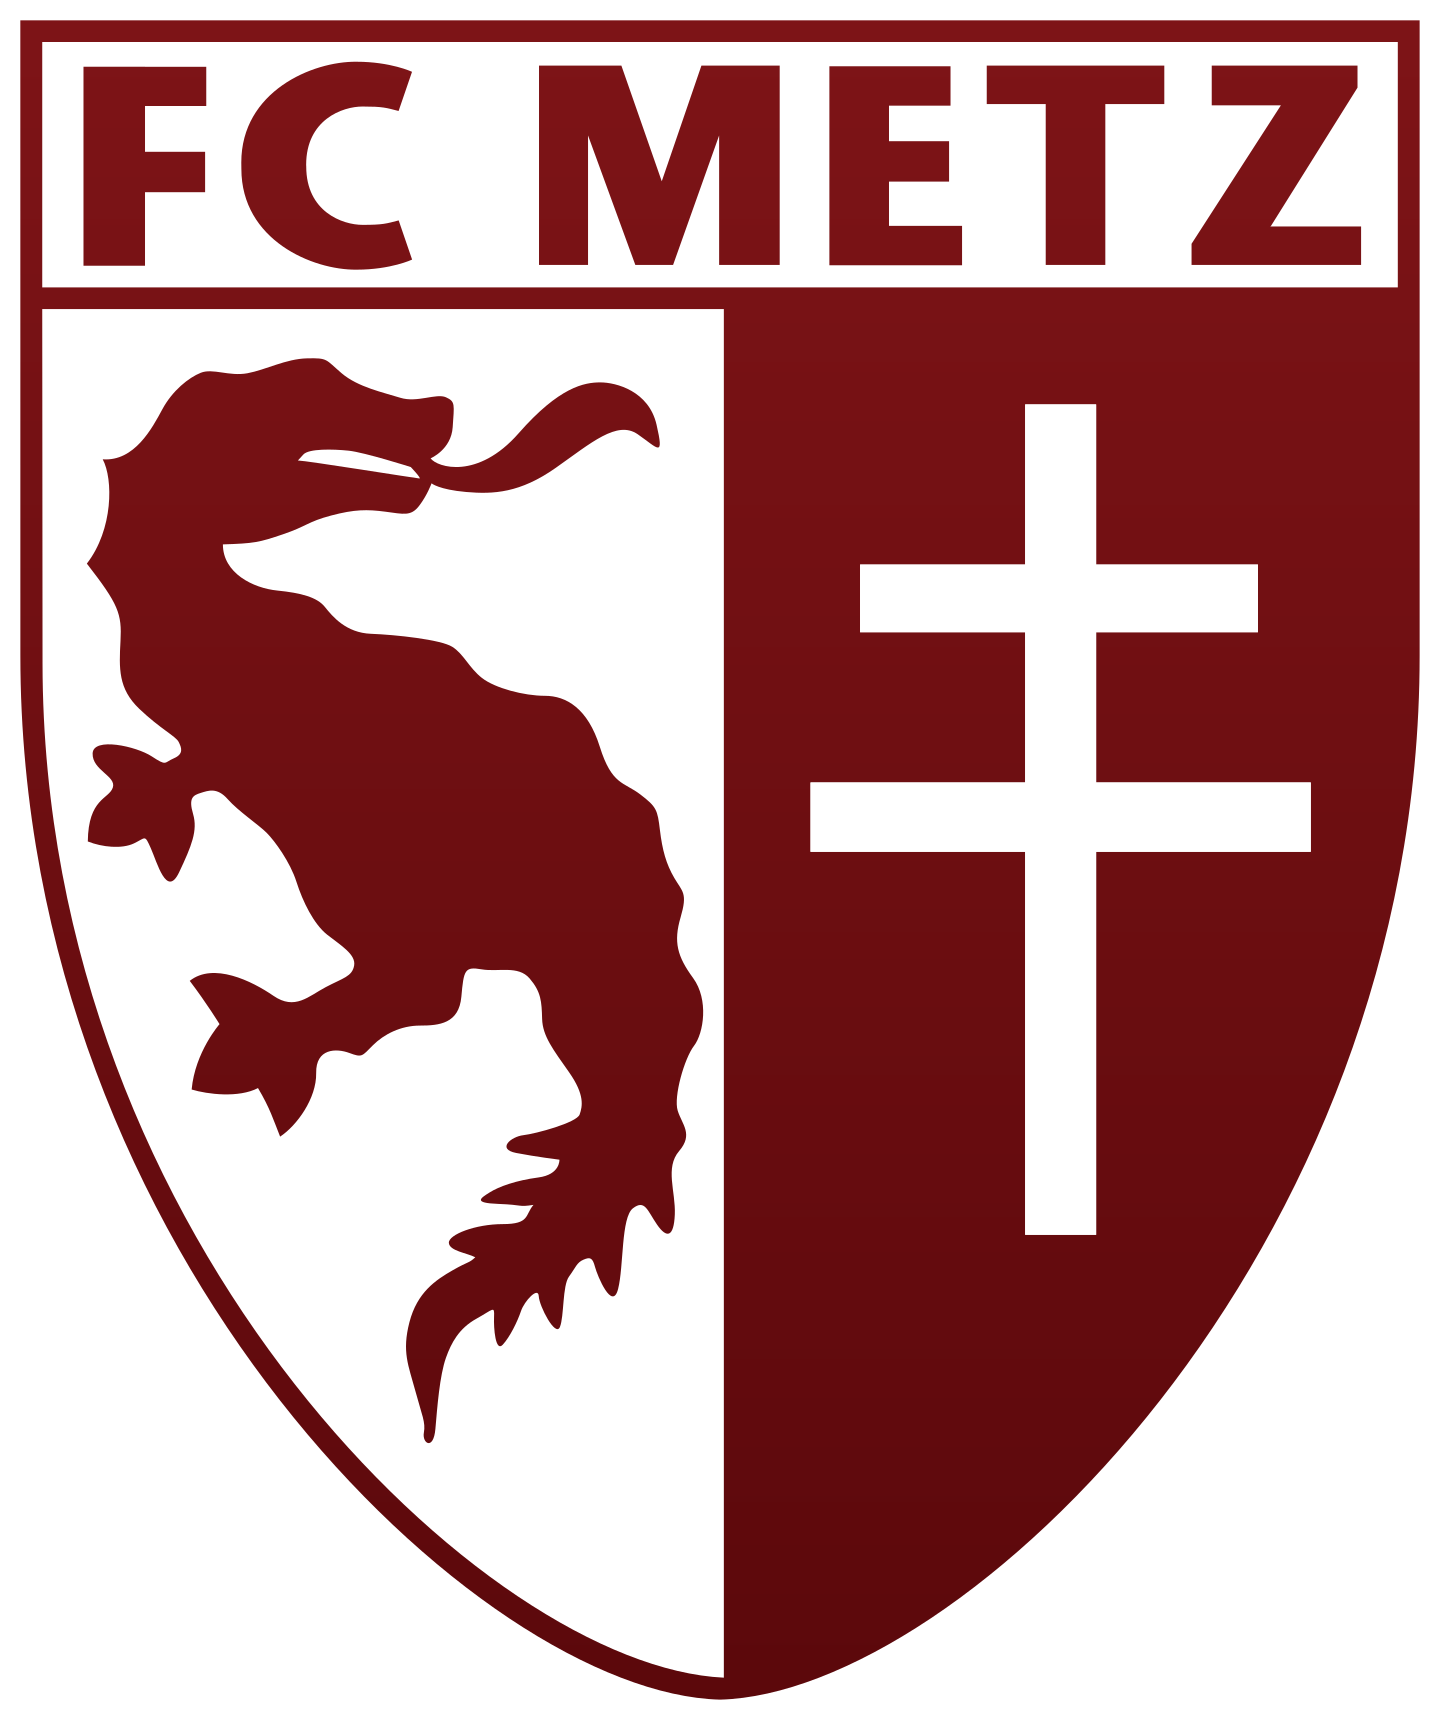 fc metz logo 2 - FC Metz Logo